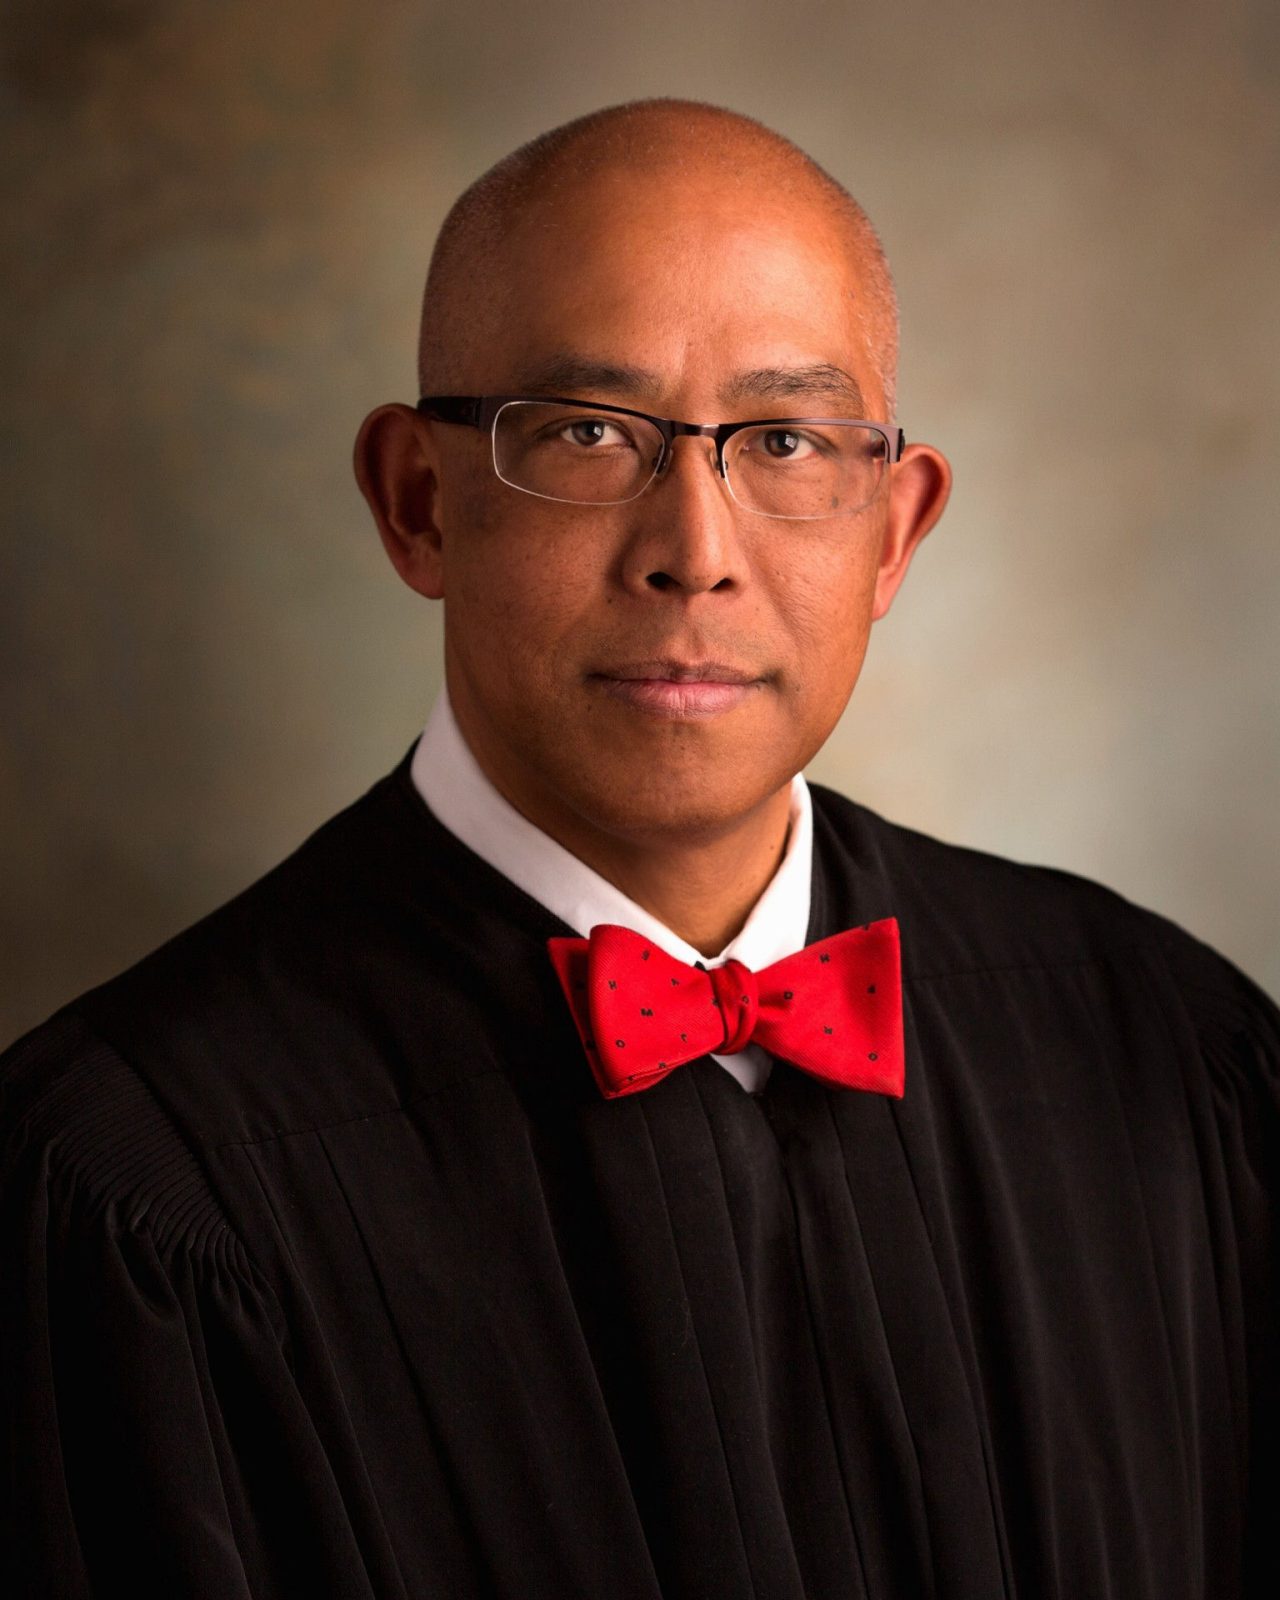 judge wearing red